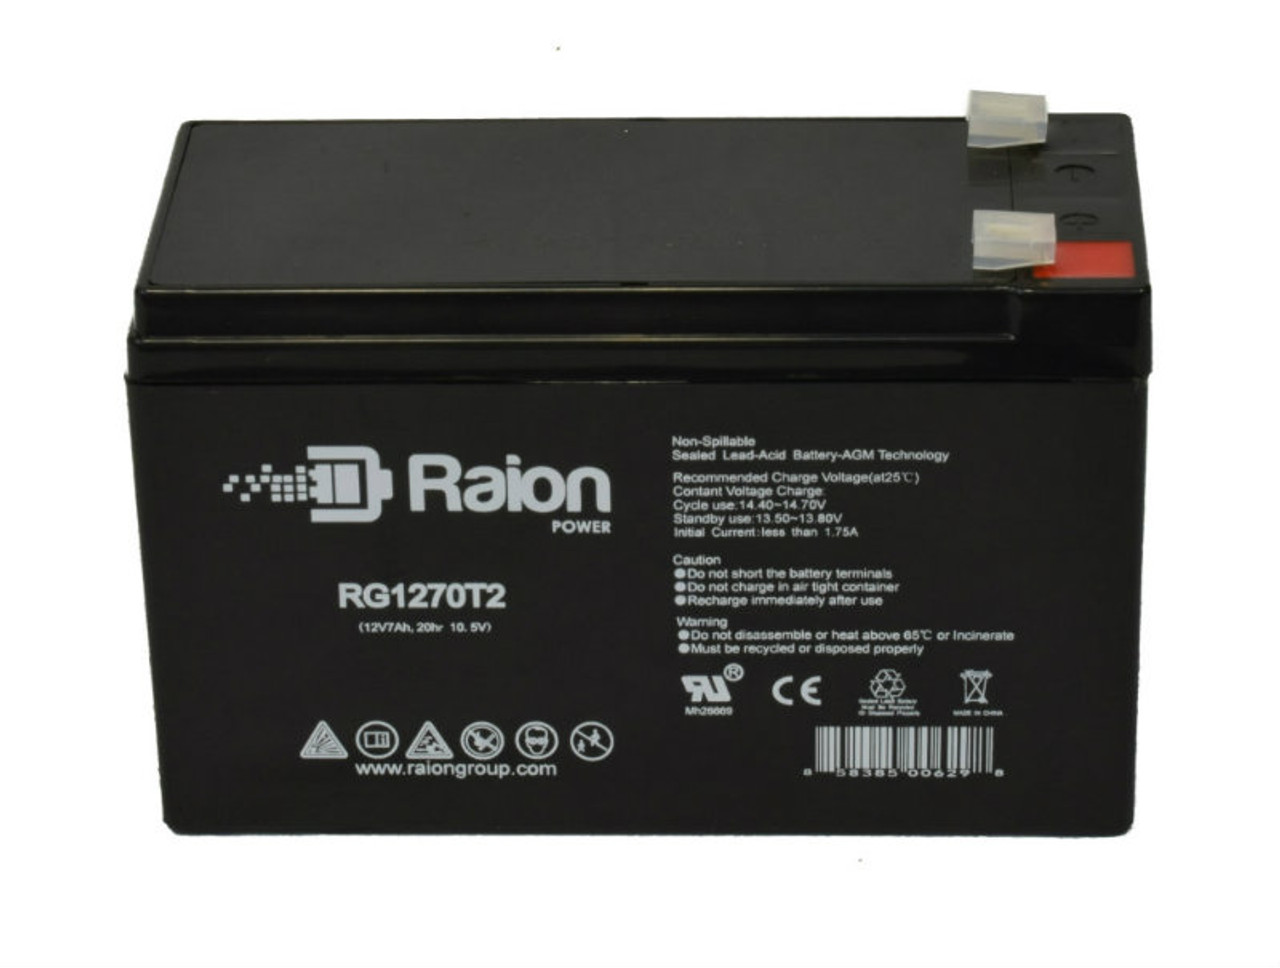 Raion Power RG1270T1 12V 7Ah Lead Acid Battery for Medtronic Model PVL 7000